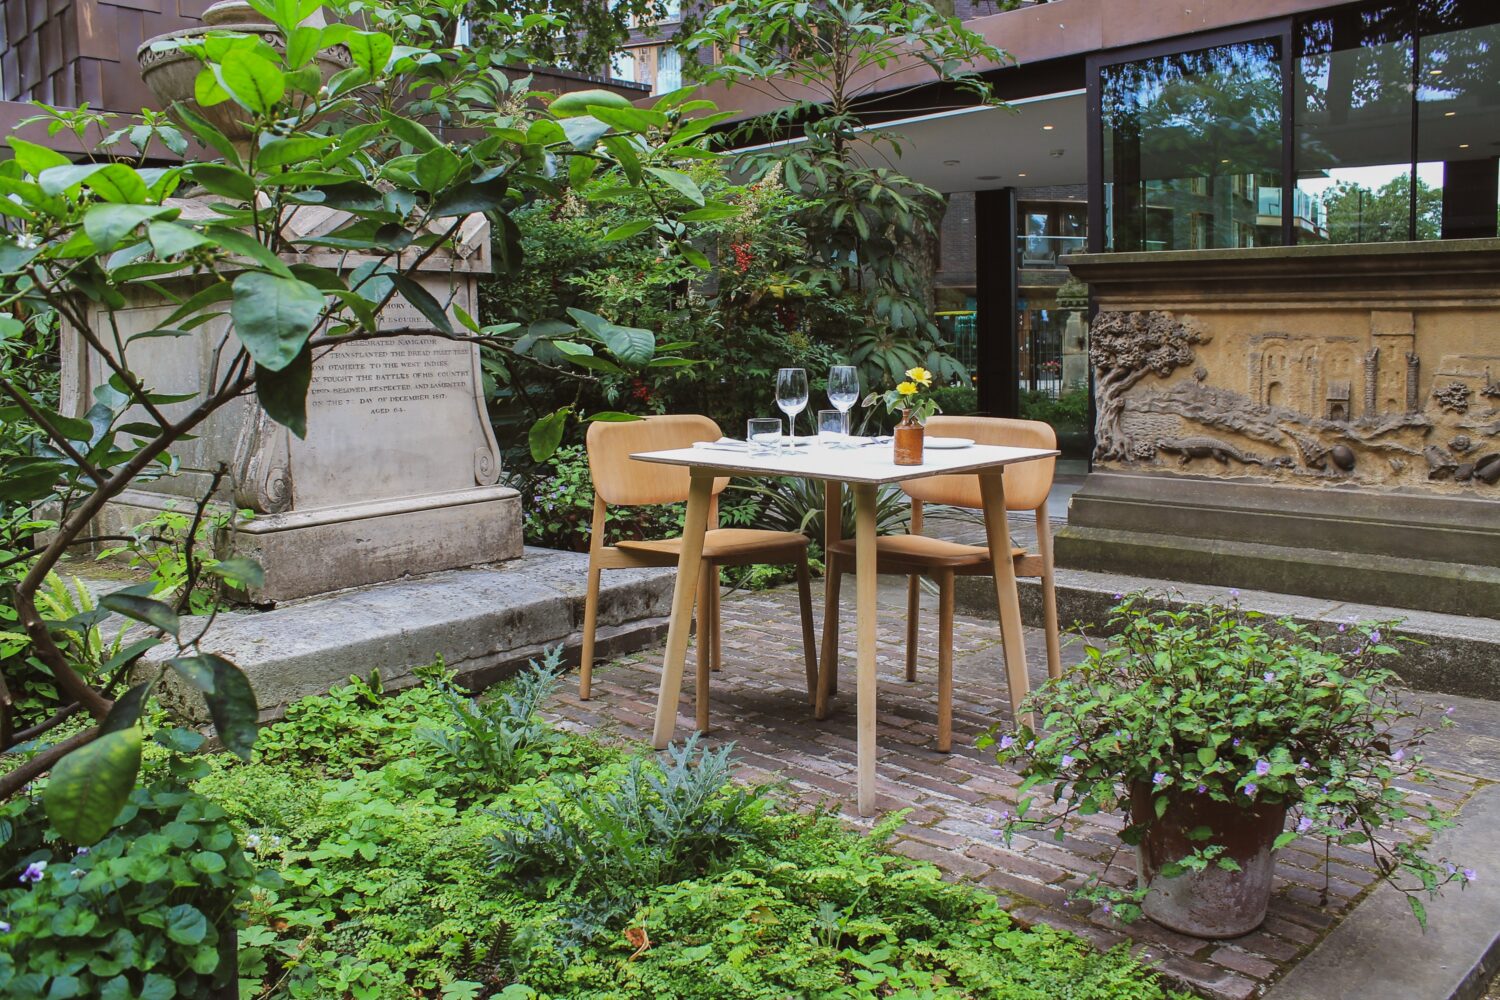 The Garden Café | A Seasonal Restaurant Hidden Within a Garden